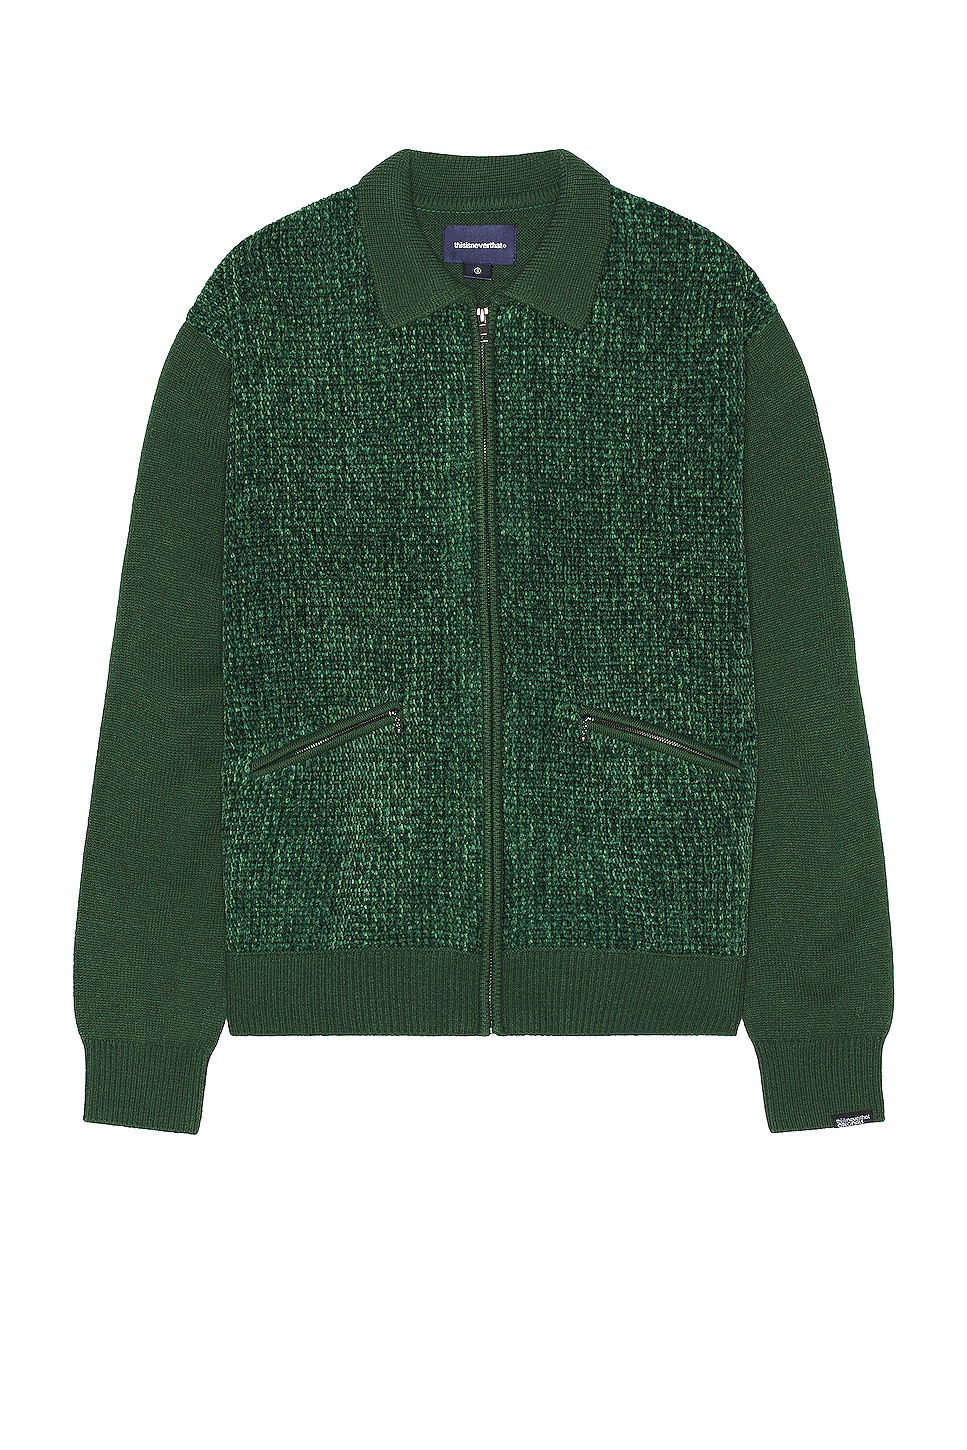 Рубашка Thisisneverthat Velvet Knit Zip Polo, зеленый thisisneverthat native zip